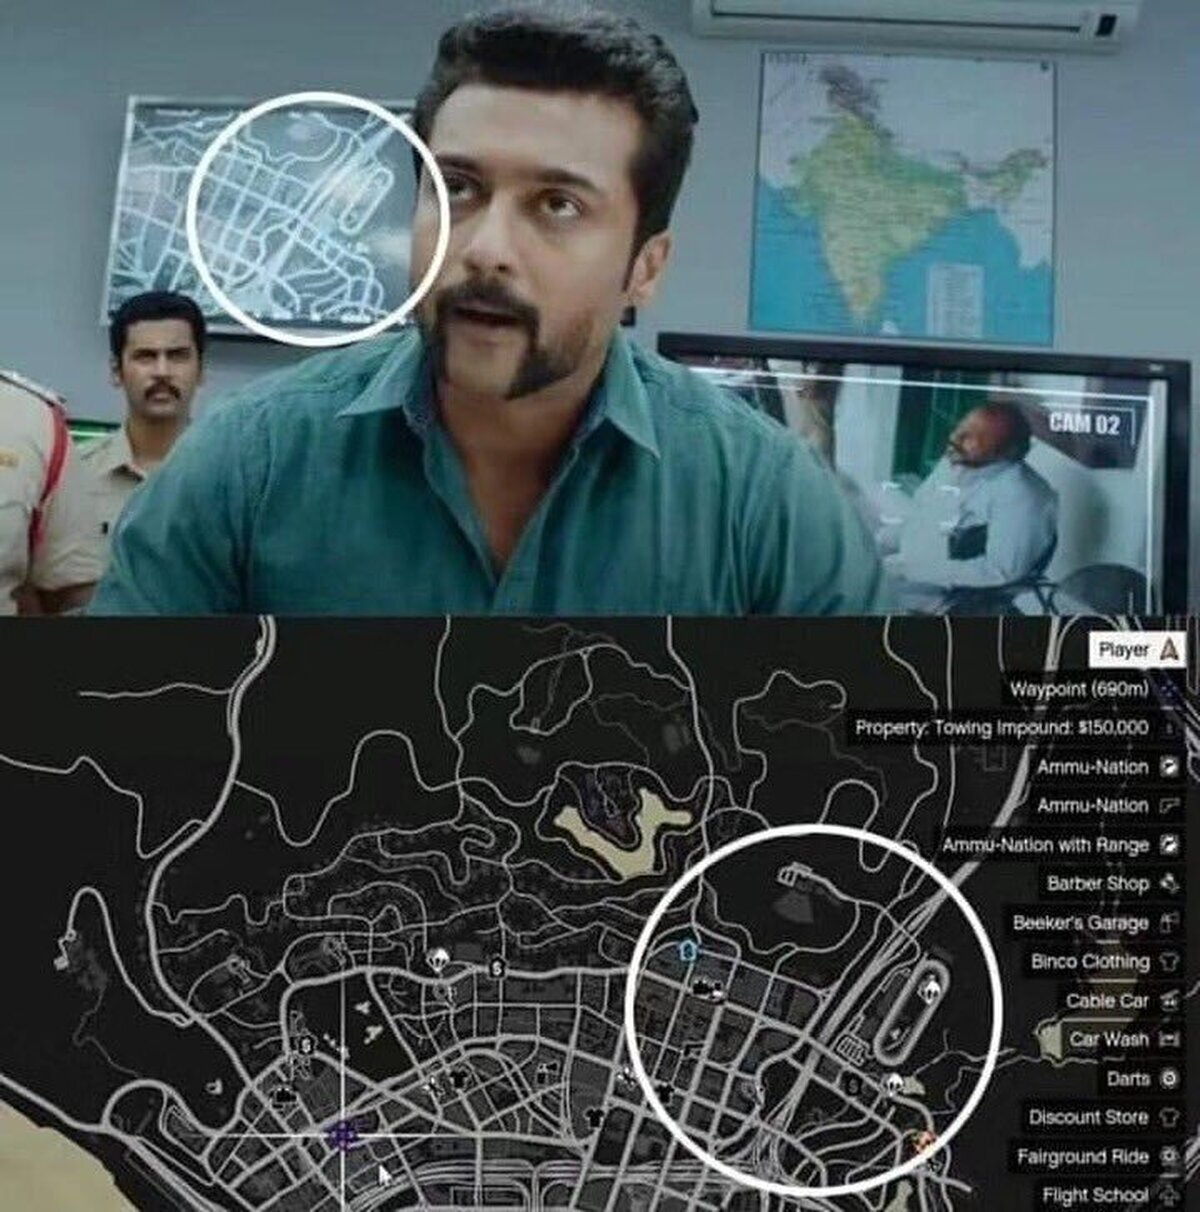 En esta peli de Bollywood han usado el mapa de GTA V para una escena